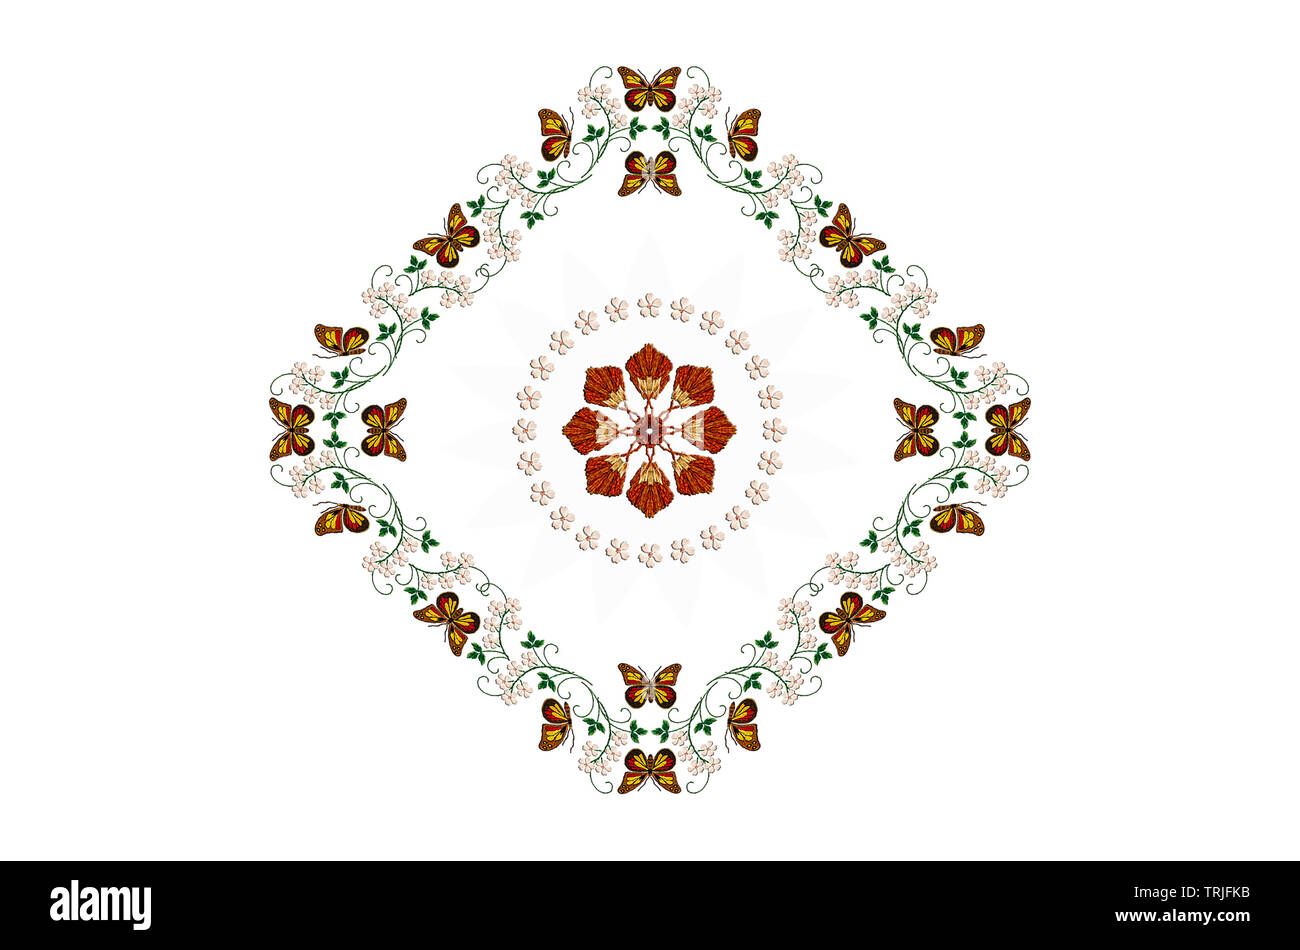 Diamond-förmigen Rahmen mit gestickten Schmetterlinge auf Stengel mit Blättern und weißen Blüten, und mit einem Kreis von weißen Blumen auf weißem Hintergrund Stockfoto